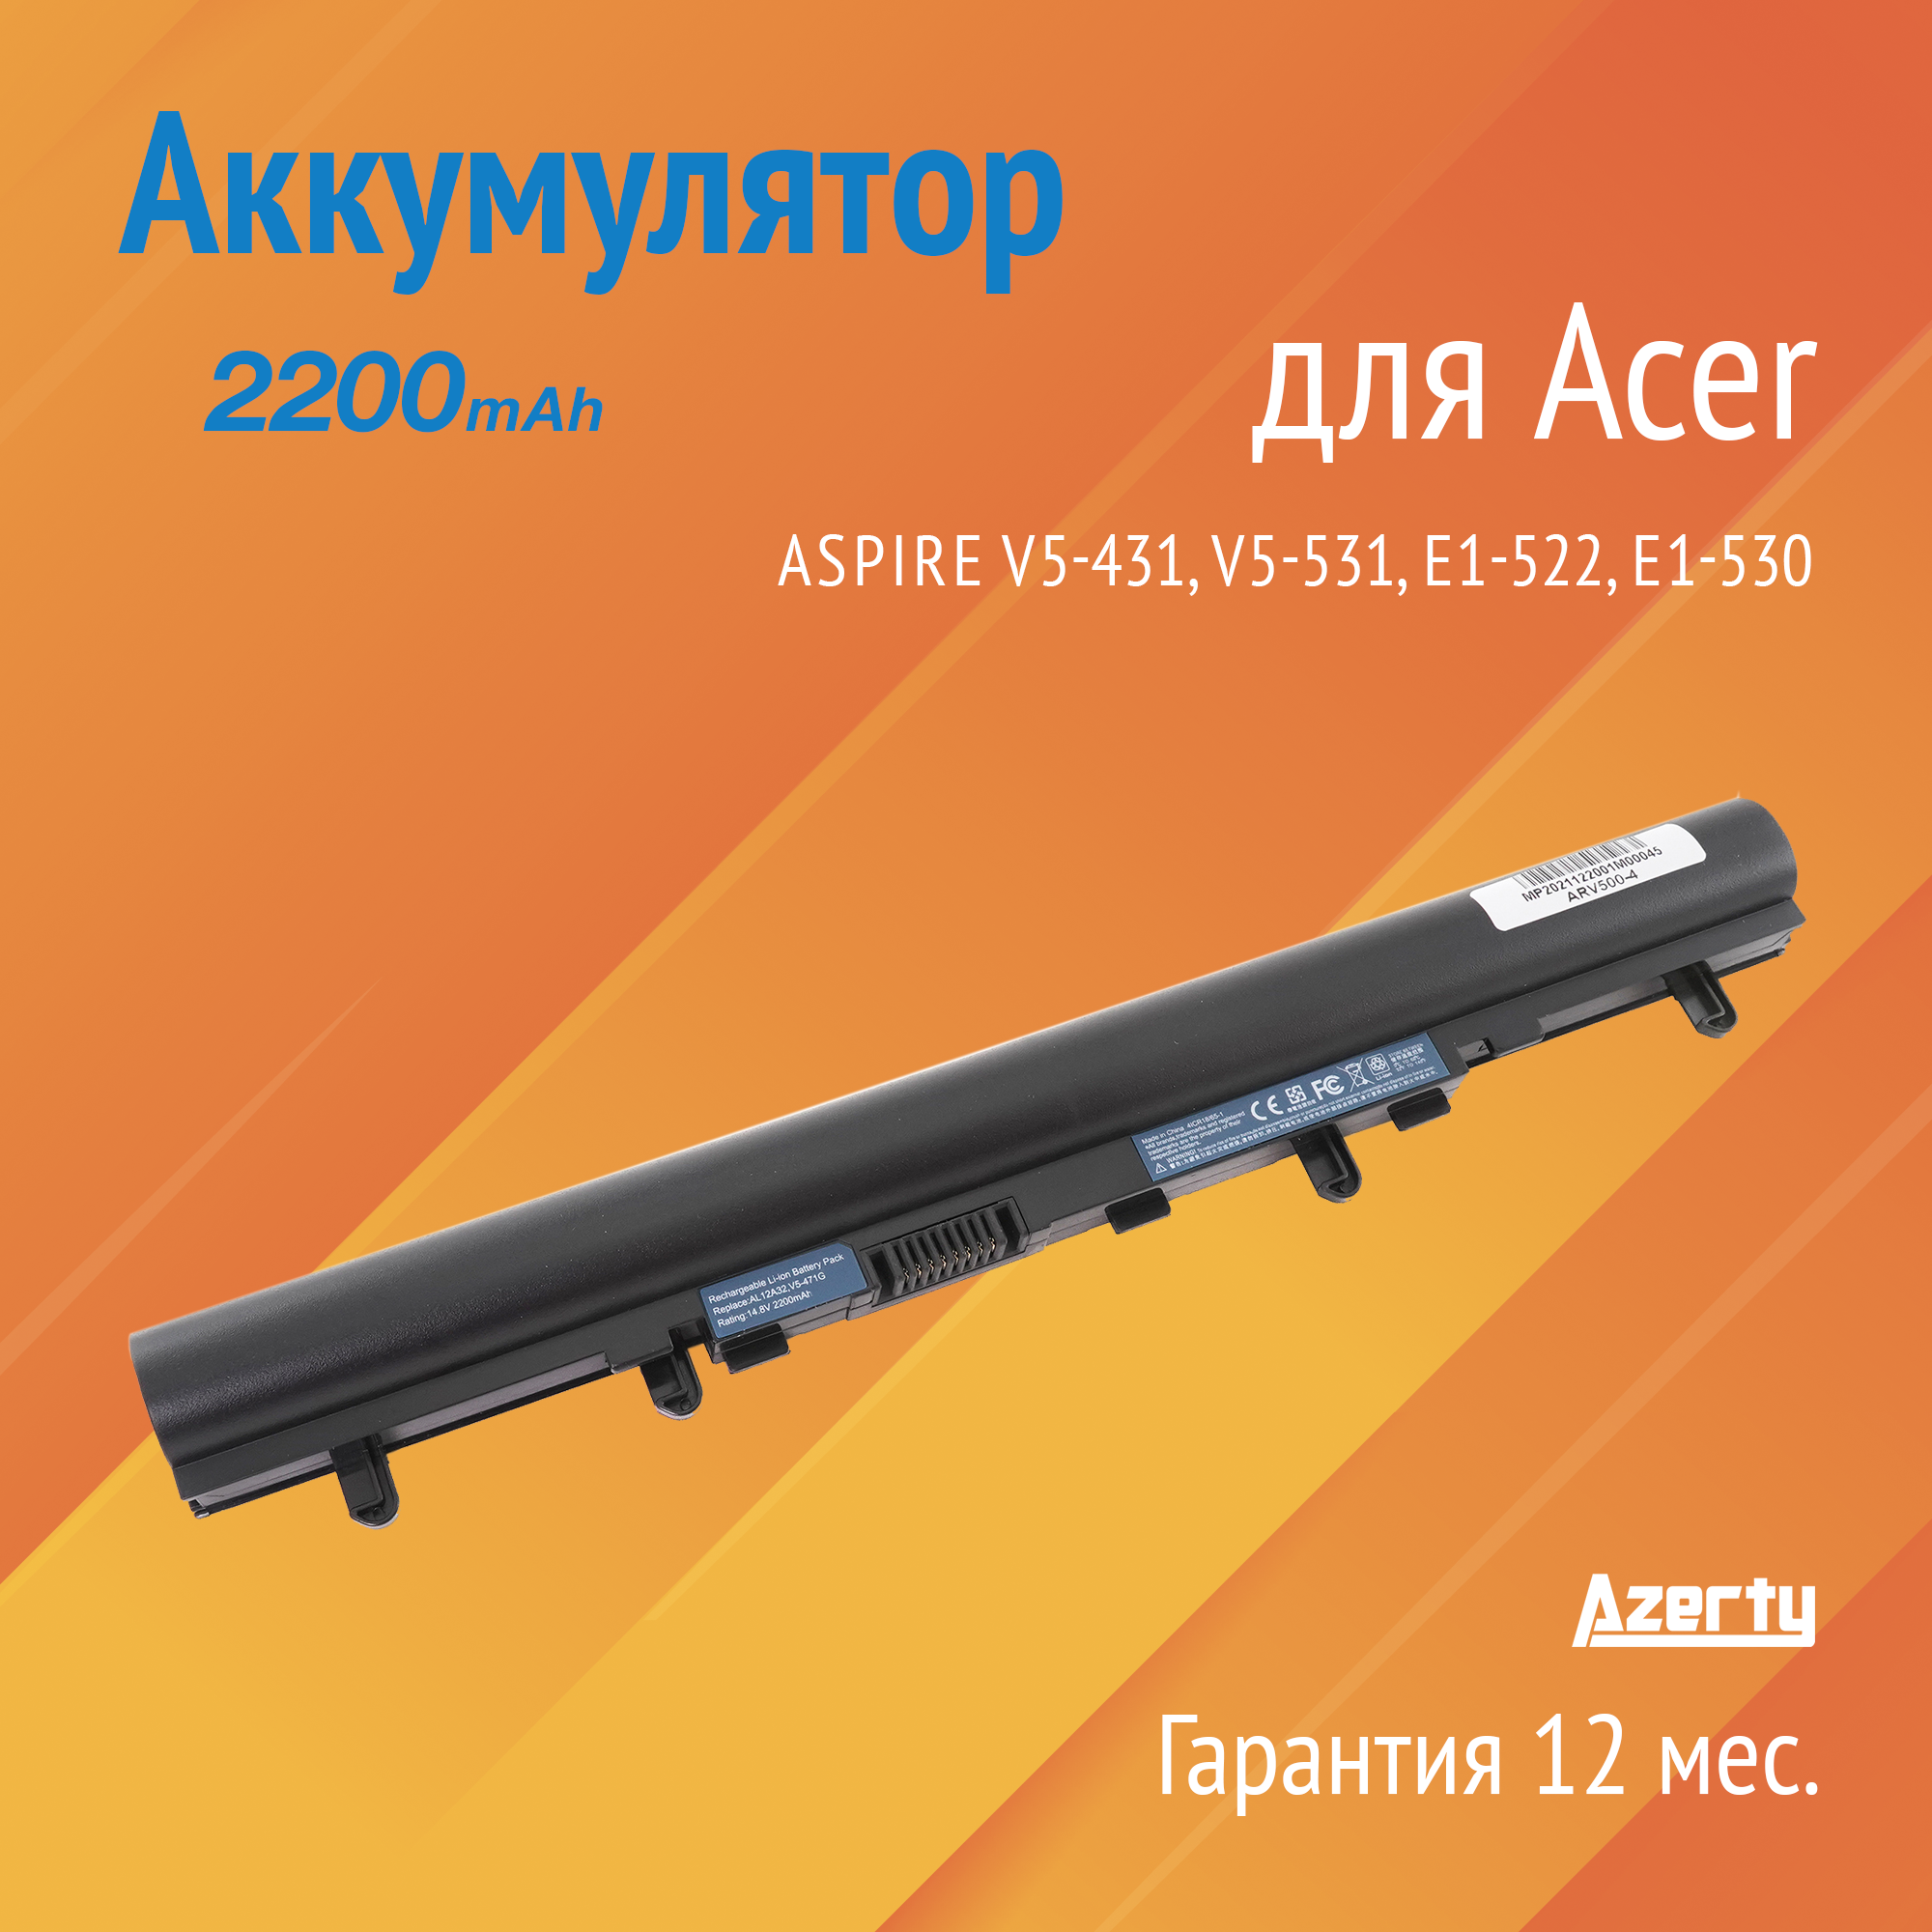 Аккумулятор AL12A32 для Acer Aspire V5-431 / V5-531 / E1-522 / E1-530 / E1-570 (AL12A72 4ICR17/65 AL12A31) 2200mAh